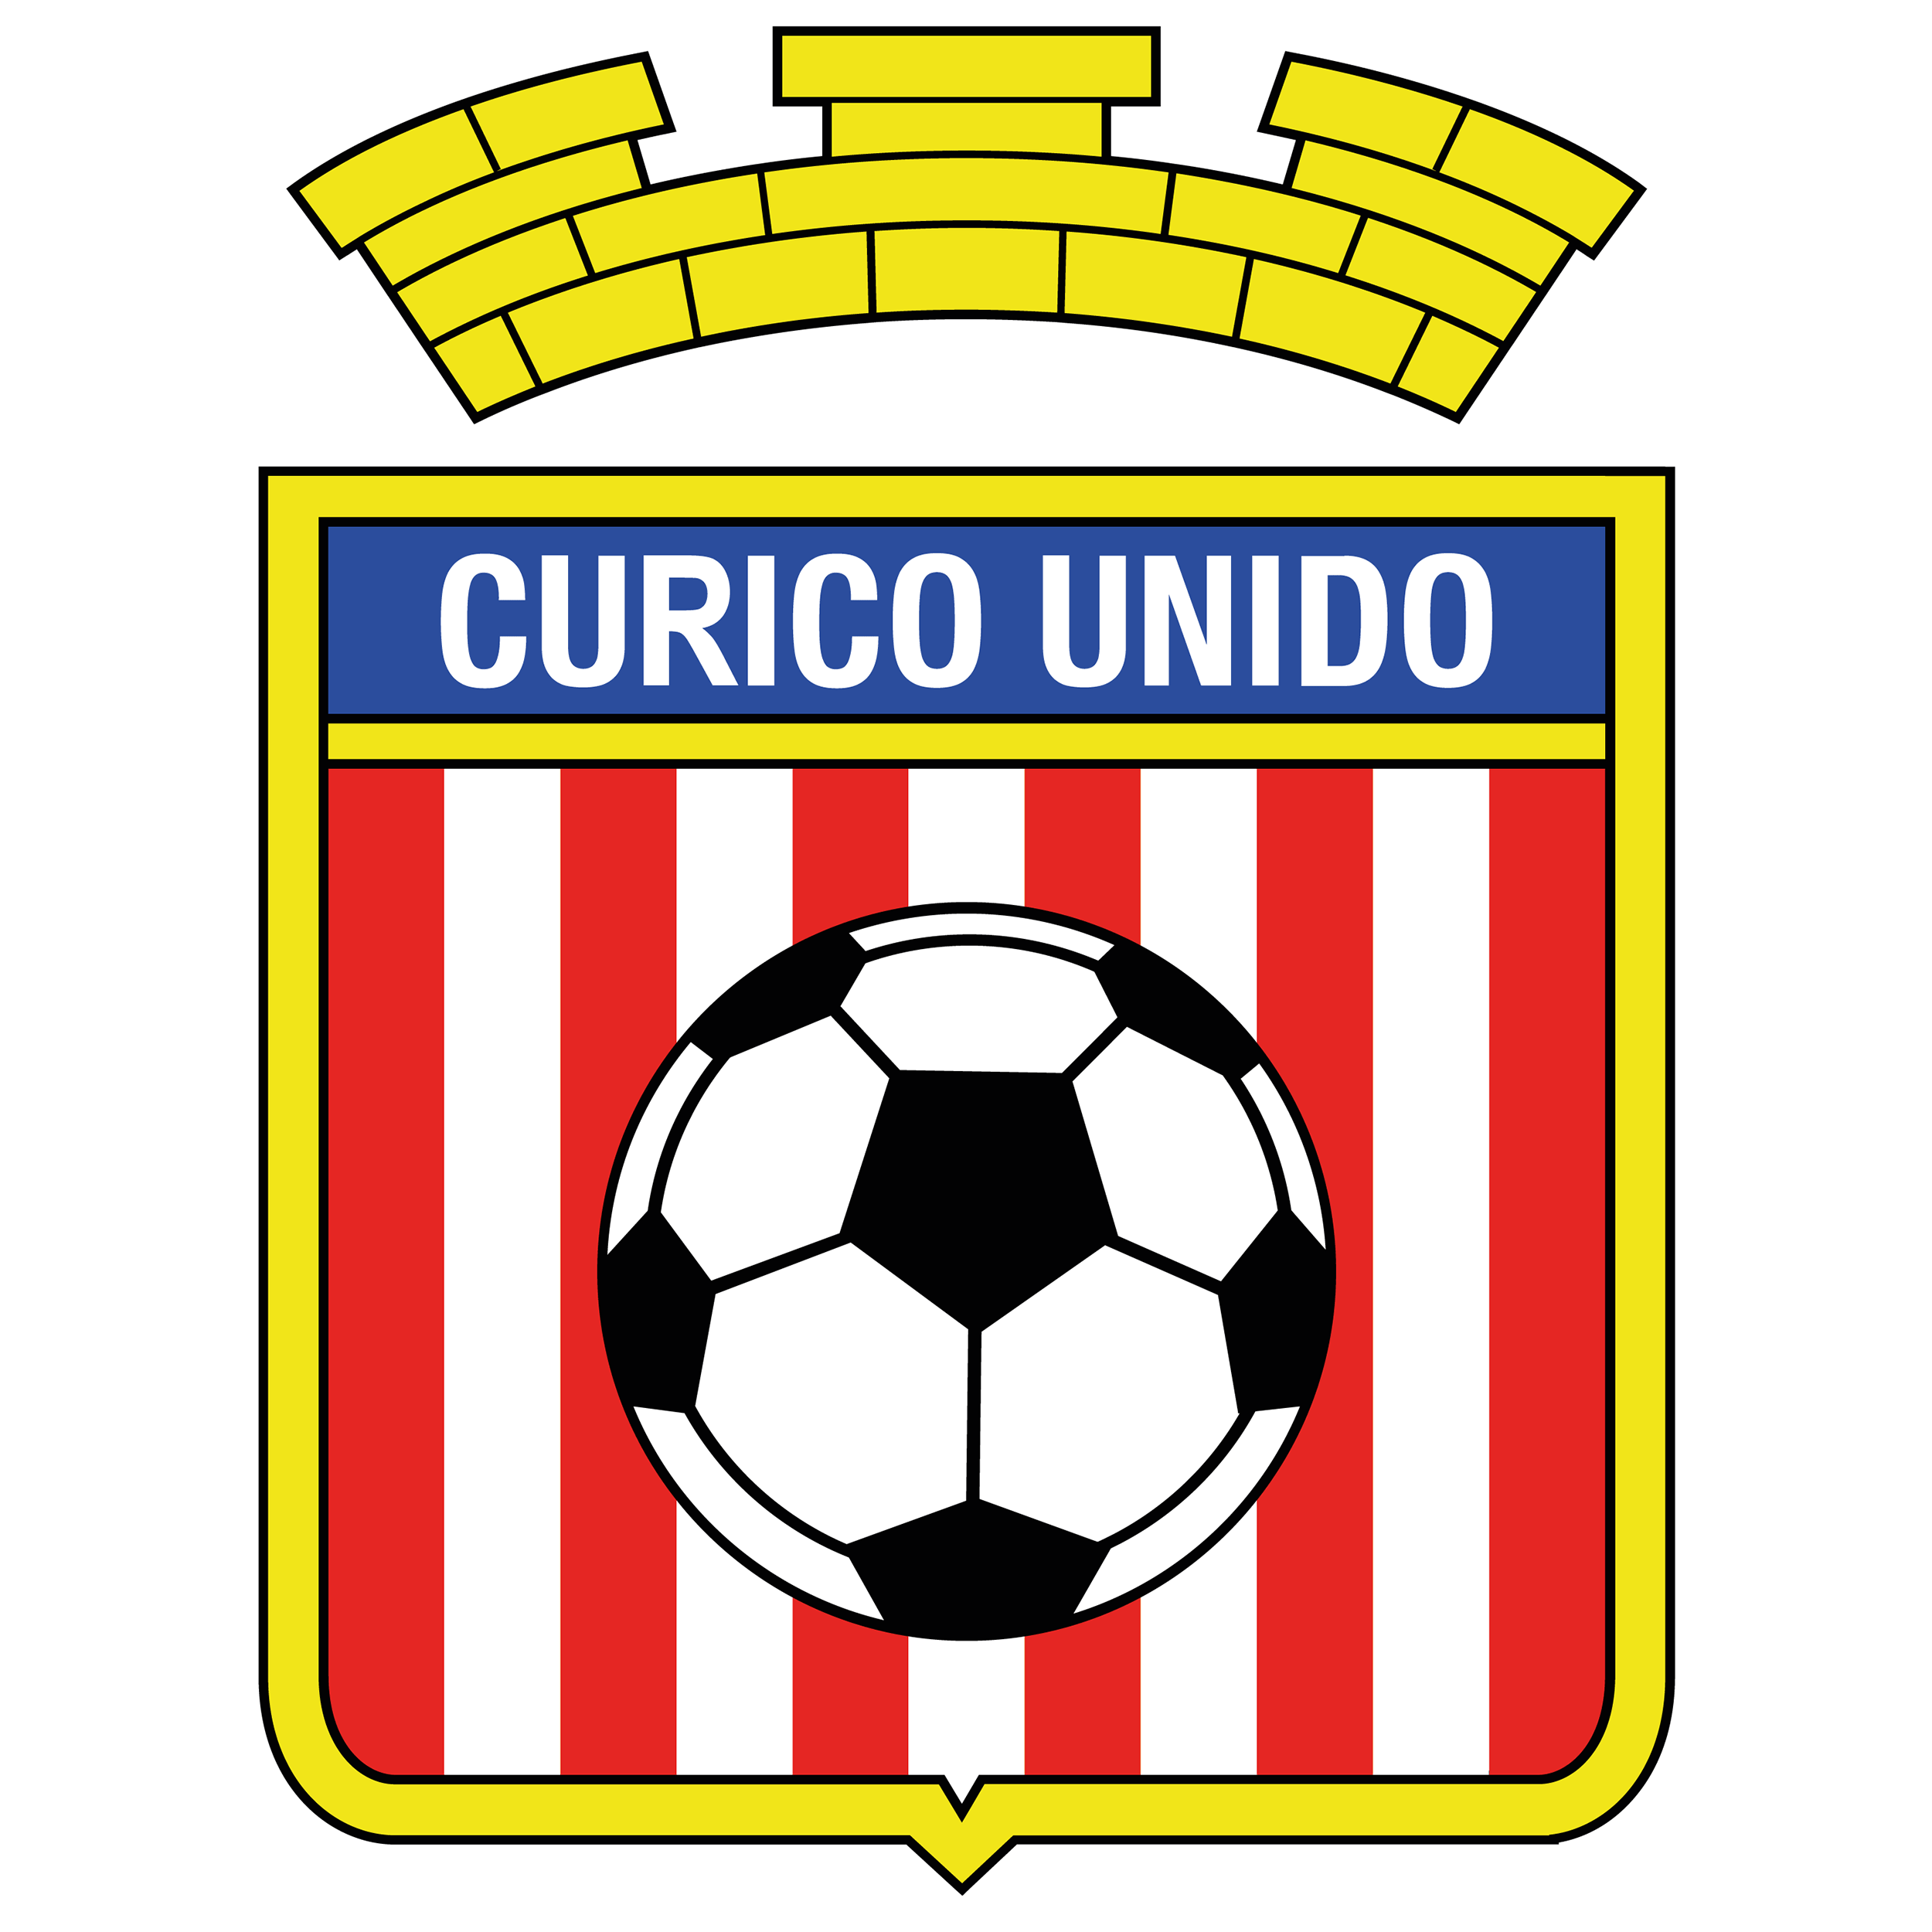 Unido Logo - Curicó Unido Logo | Football Logos